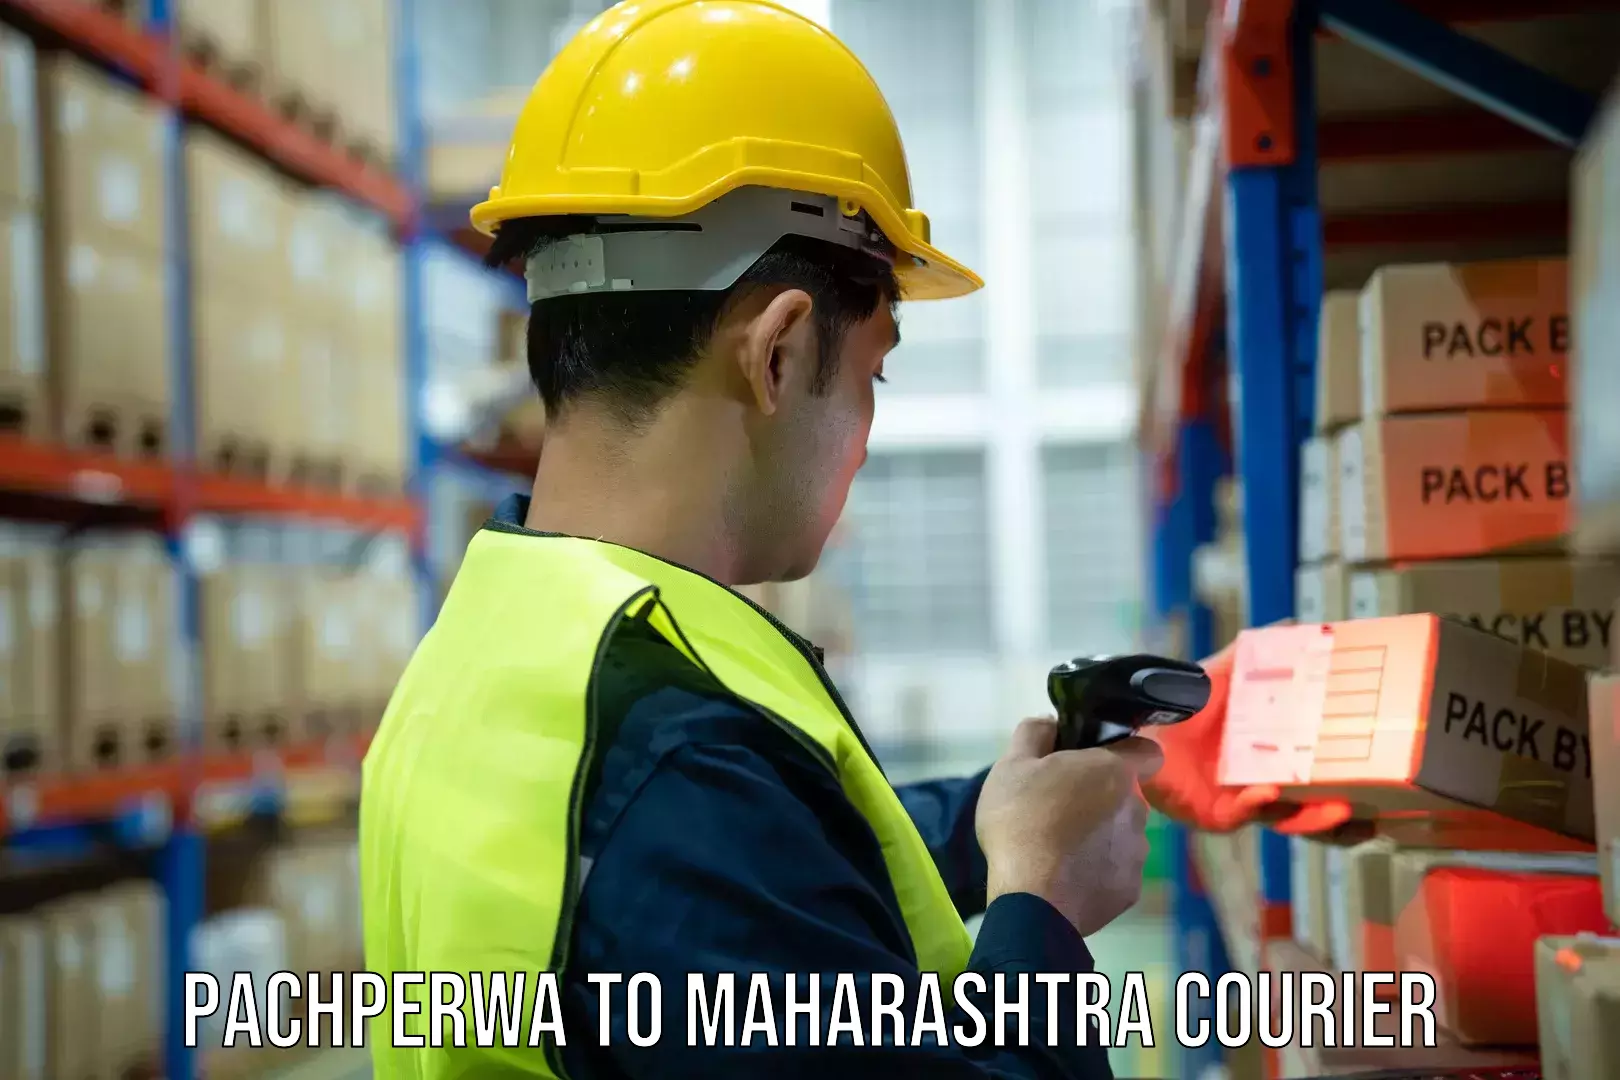 Shipping and handling Pachperwa to IIIT Pune